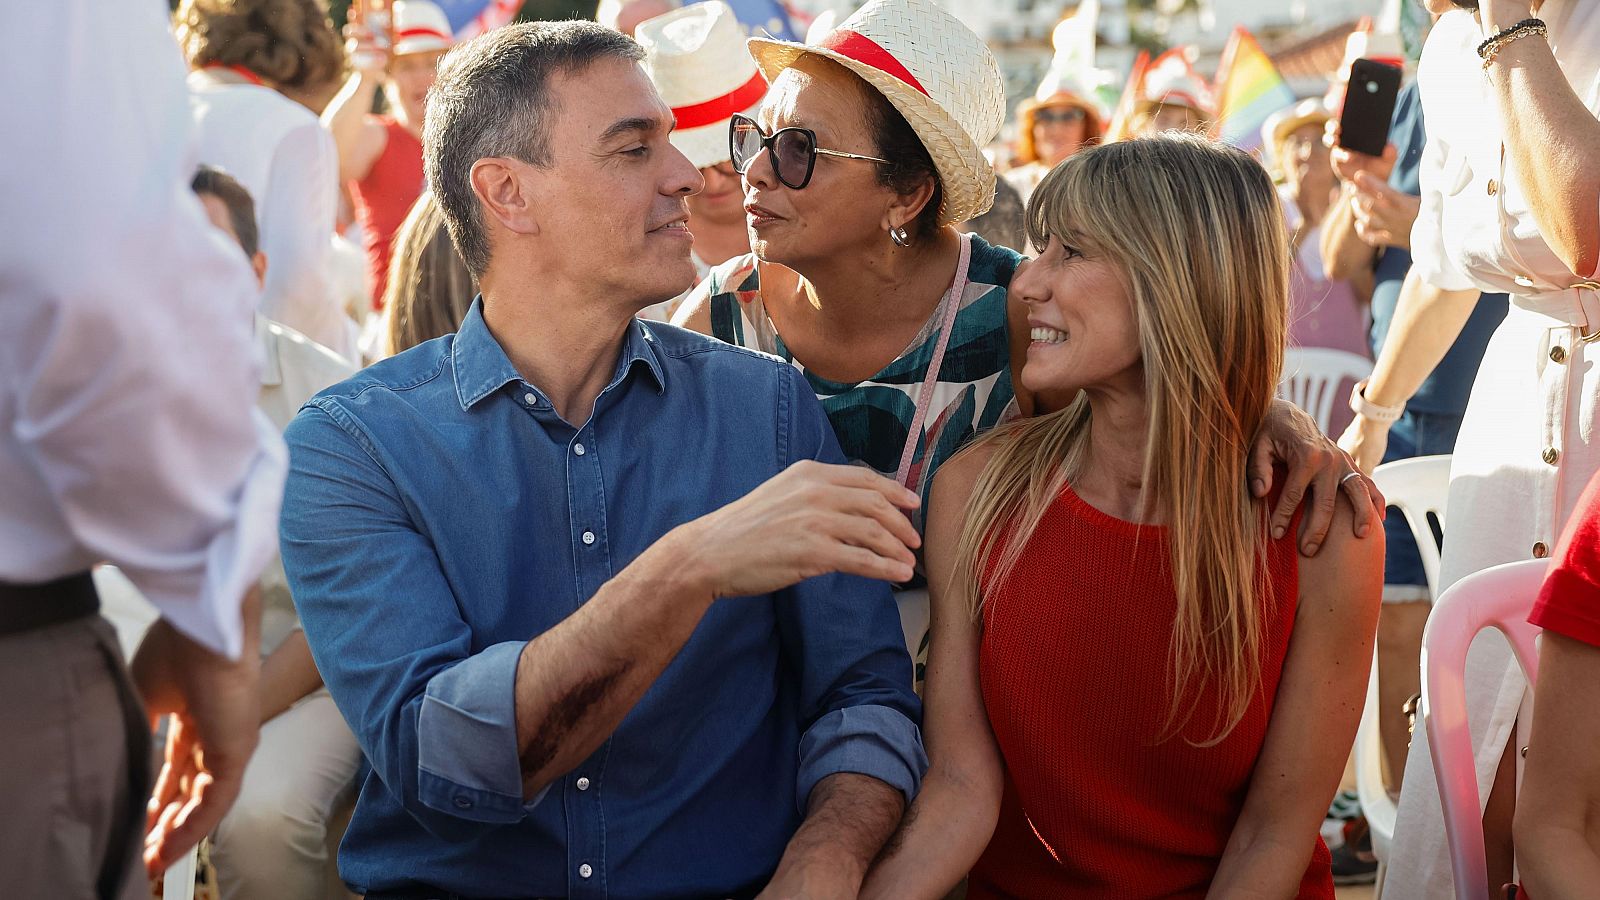 Elecciones europeas: Sánchez reaparece con su mujer, Begoña Gómez, en un acto de campaña tras su citación por el juez